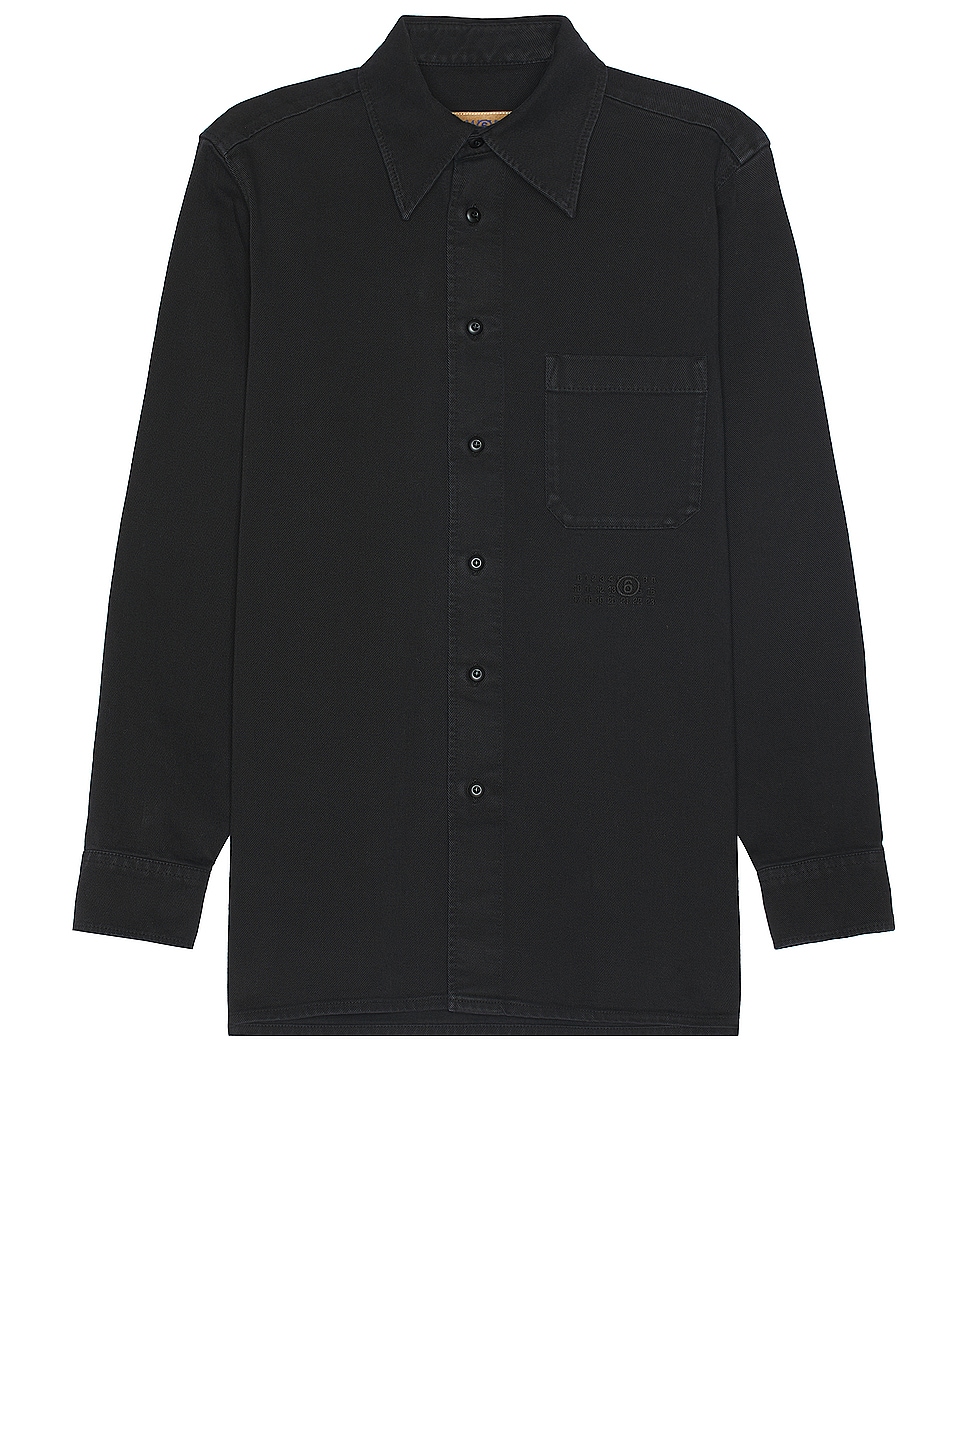 Image 1 of MM6 Maison Margiela Long Sleeve Shirt in Black